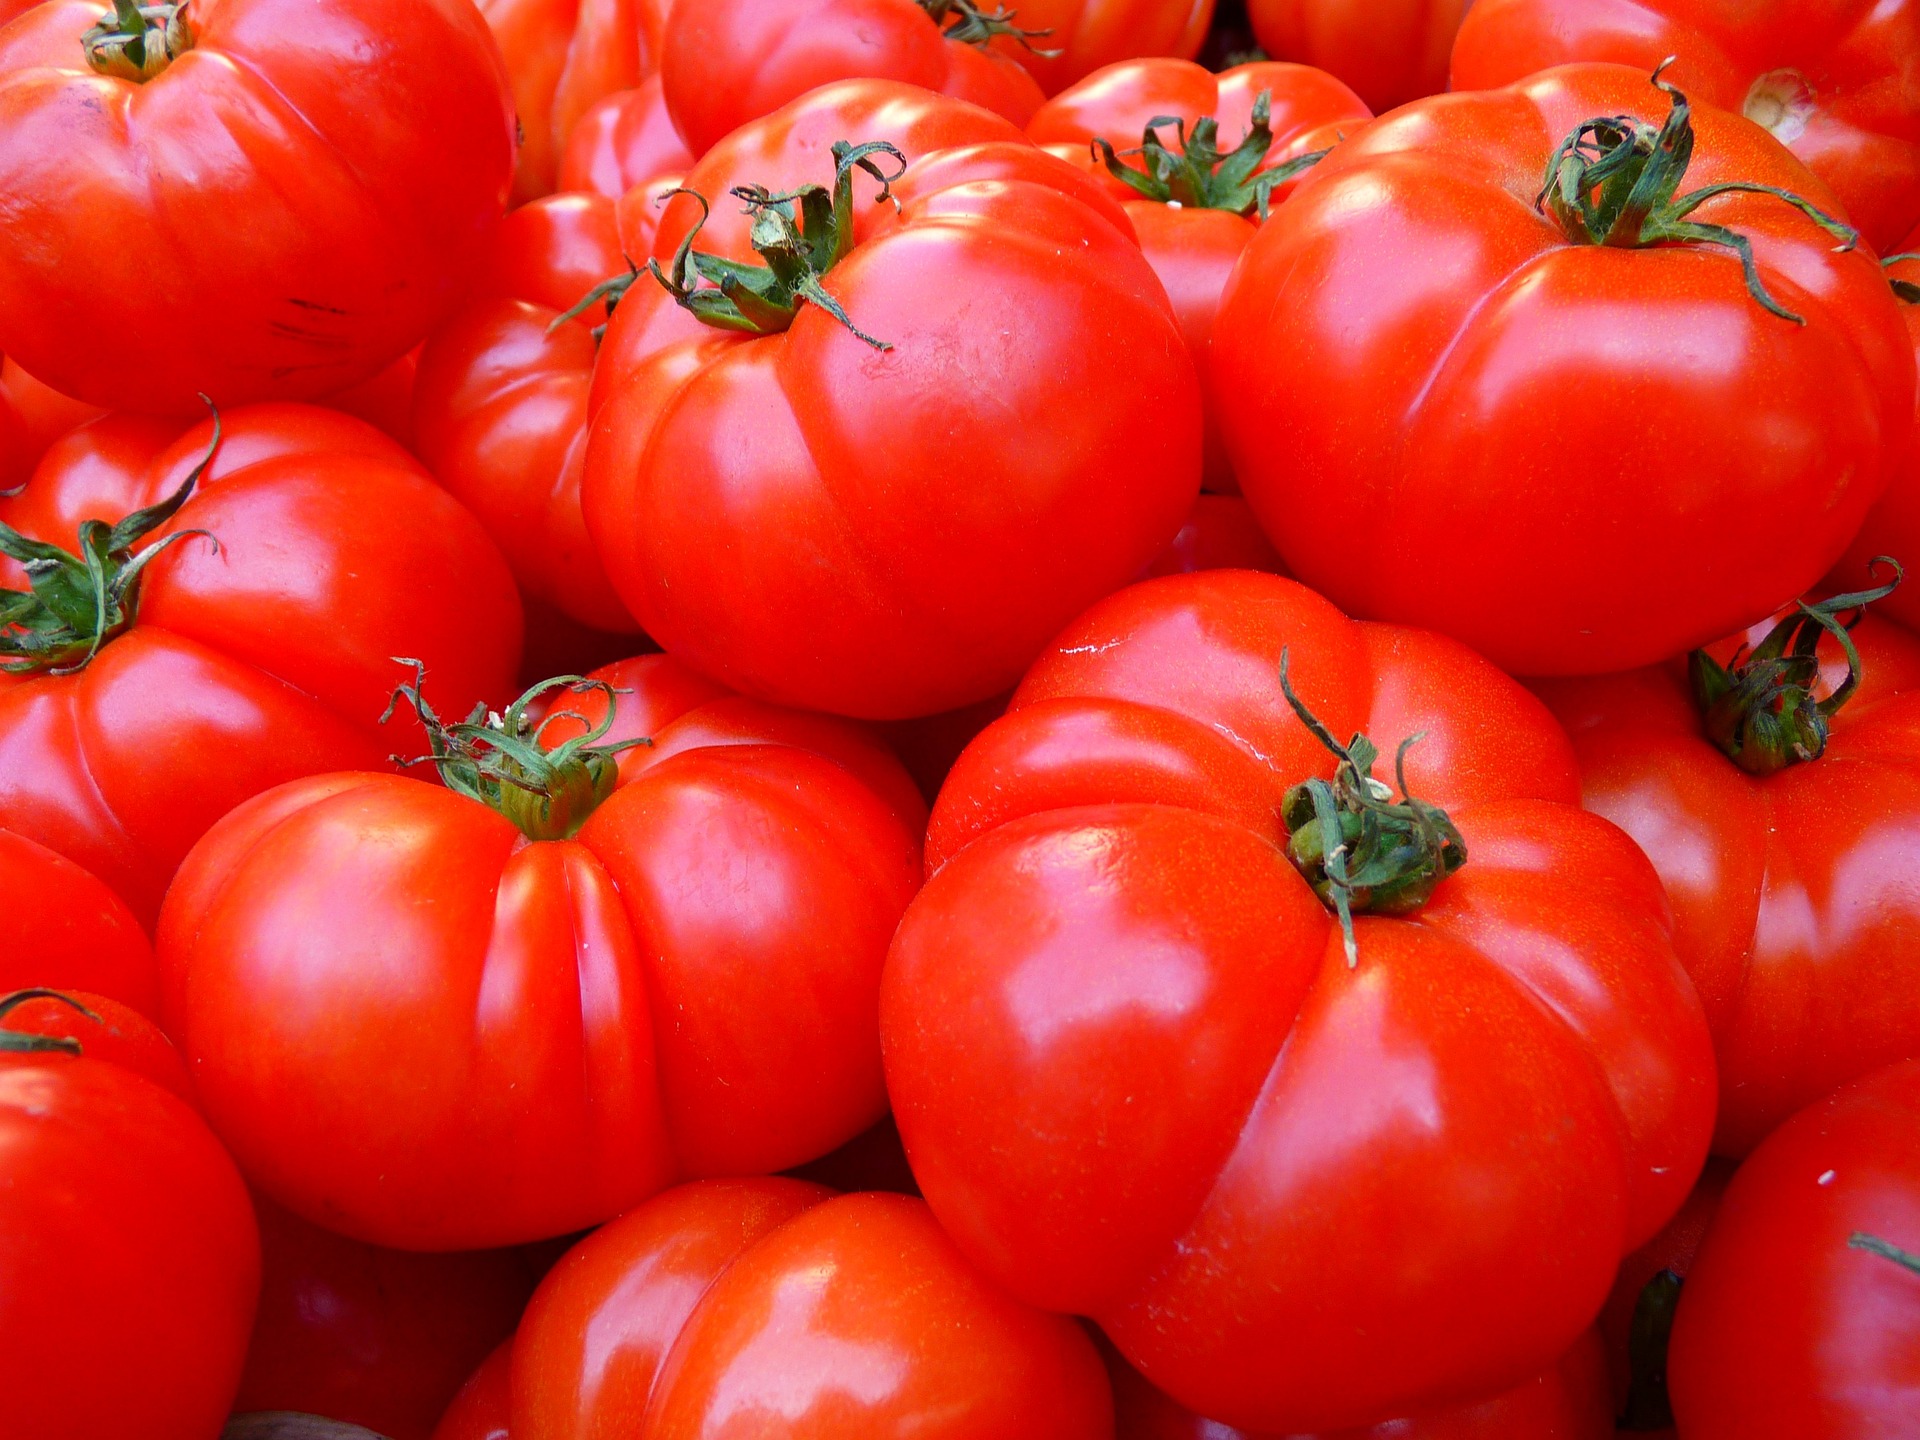 역류성 식도염에 좋은 음식 - 토마토